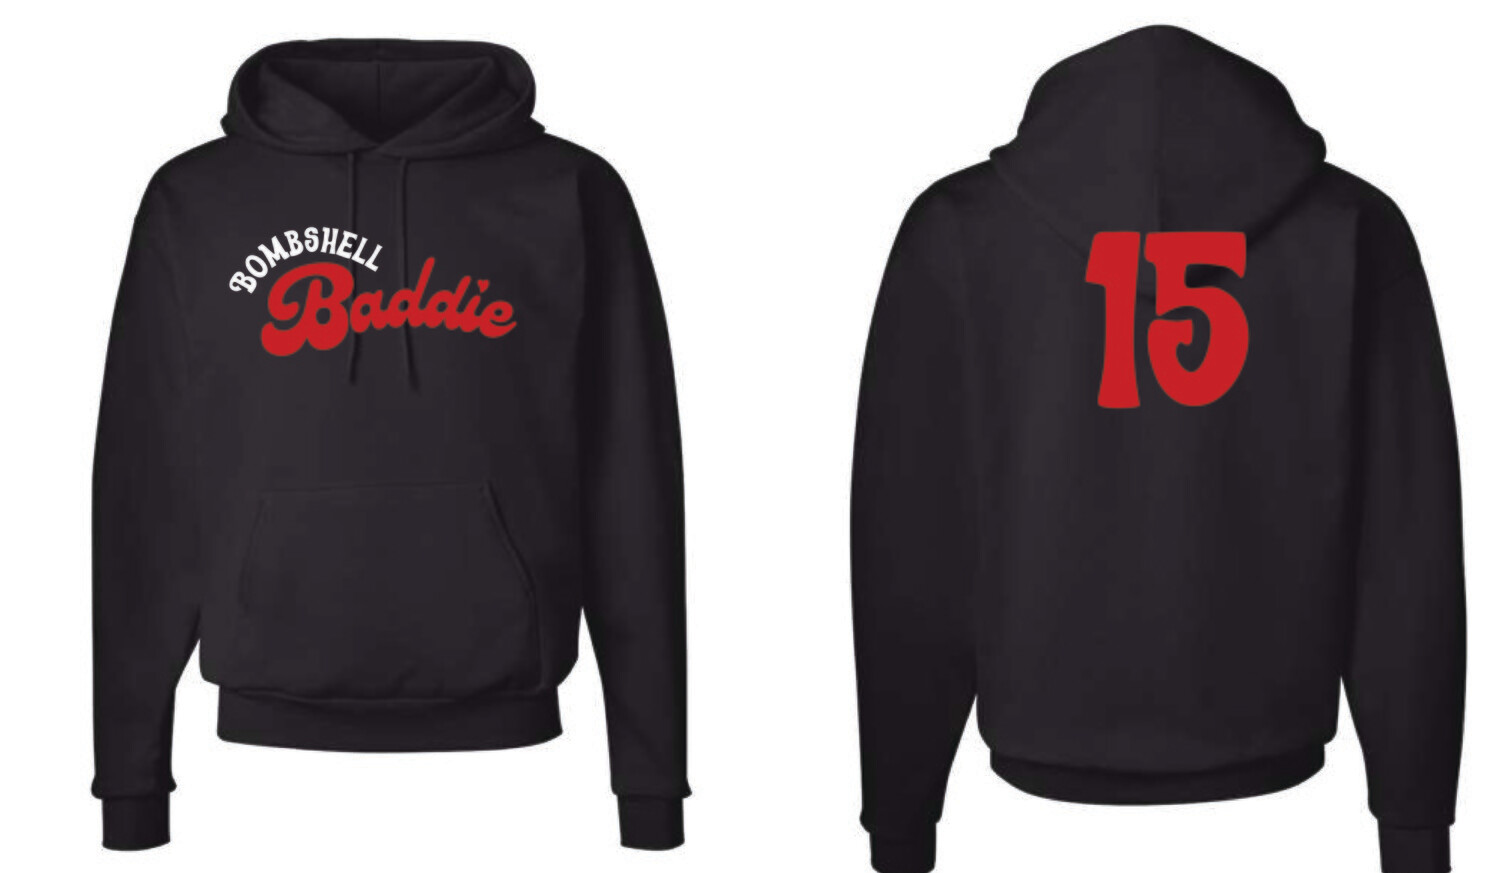 Bombshell Baddie Eco Sweatshirt